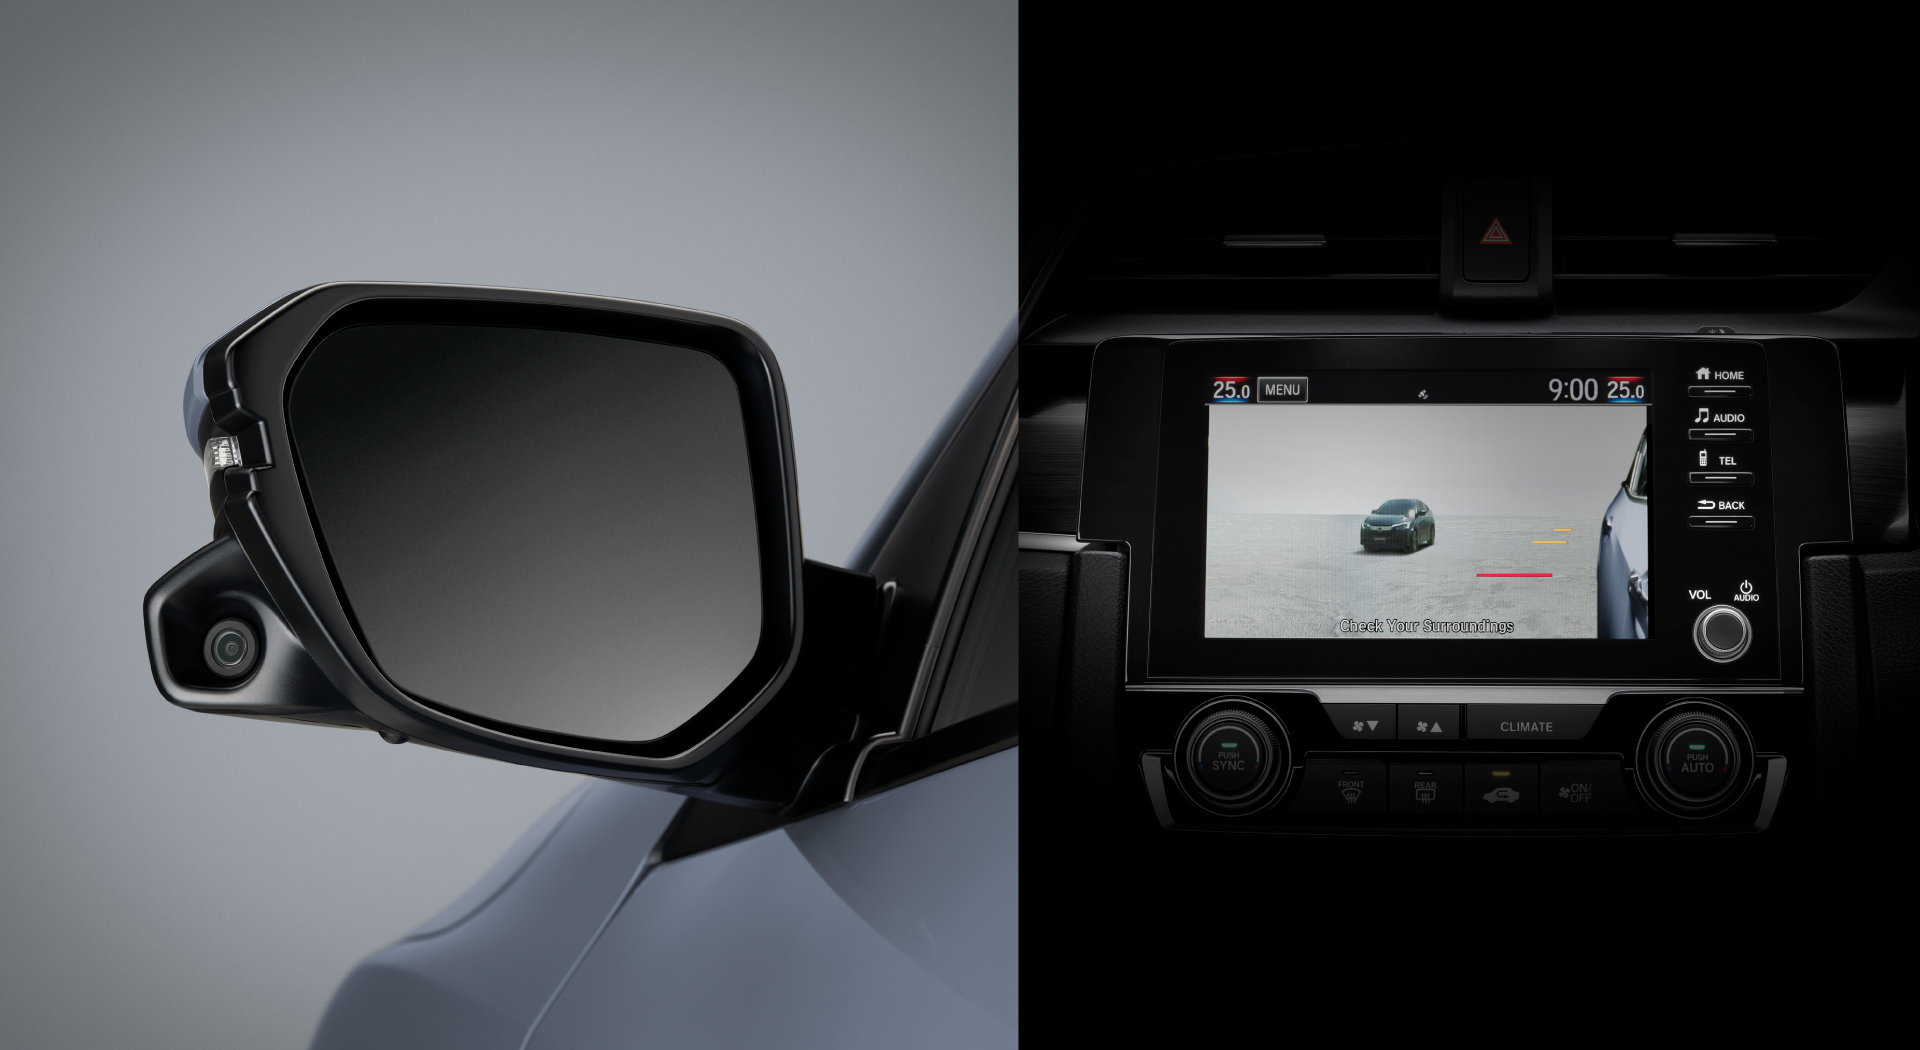 Honda LaneWatch ระบบแสดงภาพมุมอับสายตาขณะเปลี่ยนเลน ที่ช่วยลดจุดบอดในการมองเห็นของกระจกมองข้างด้านซ้าย โดยใช้กล้องจับภาพและแสดงผลอ่านหน้าจอขนาด 7 นิ้ว เพื่อการมองเห็นที่ไร้มุมอับ ให้ความปลอดภัยในการขับขี่